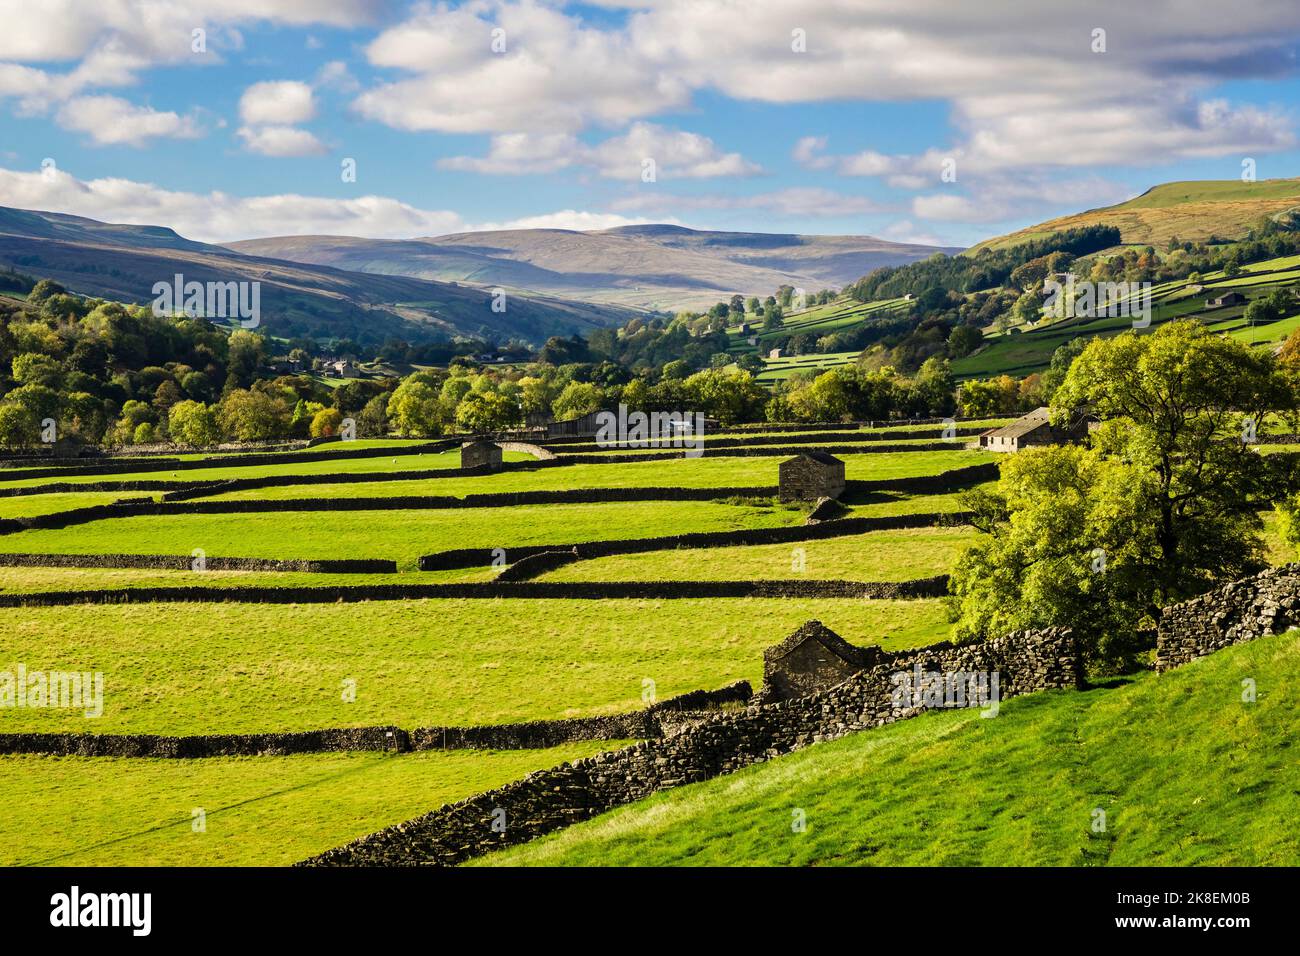 Paesaggio di campagna inglese soleggiato con fienili e muri a secco nel Parco Nazionale Yorkshire Dales. Gunnerside, Swaledale, Yorkshire settentrionale, Inghilterra, Regno Unito Foto Stock